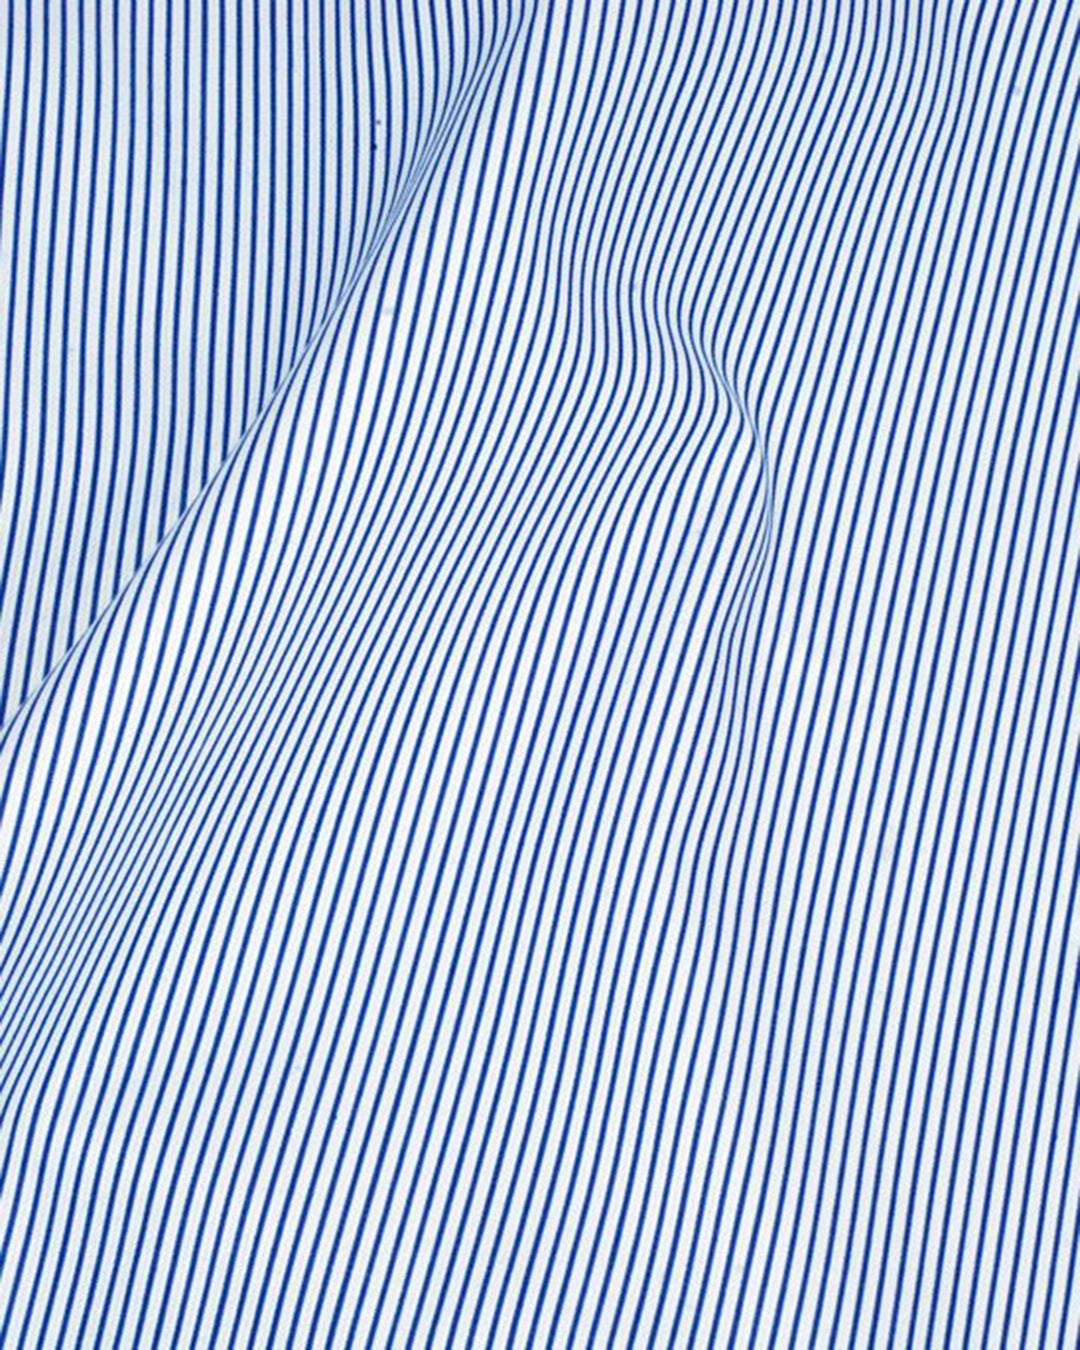 Luxire Privilege Collection Blue Stripes on White